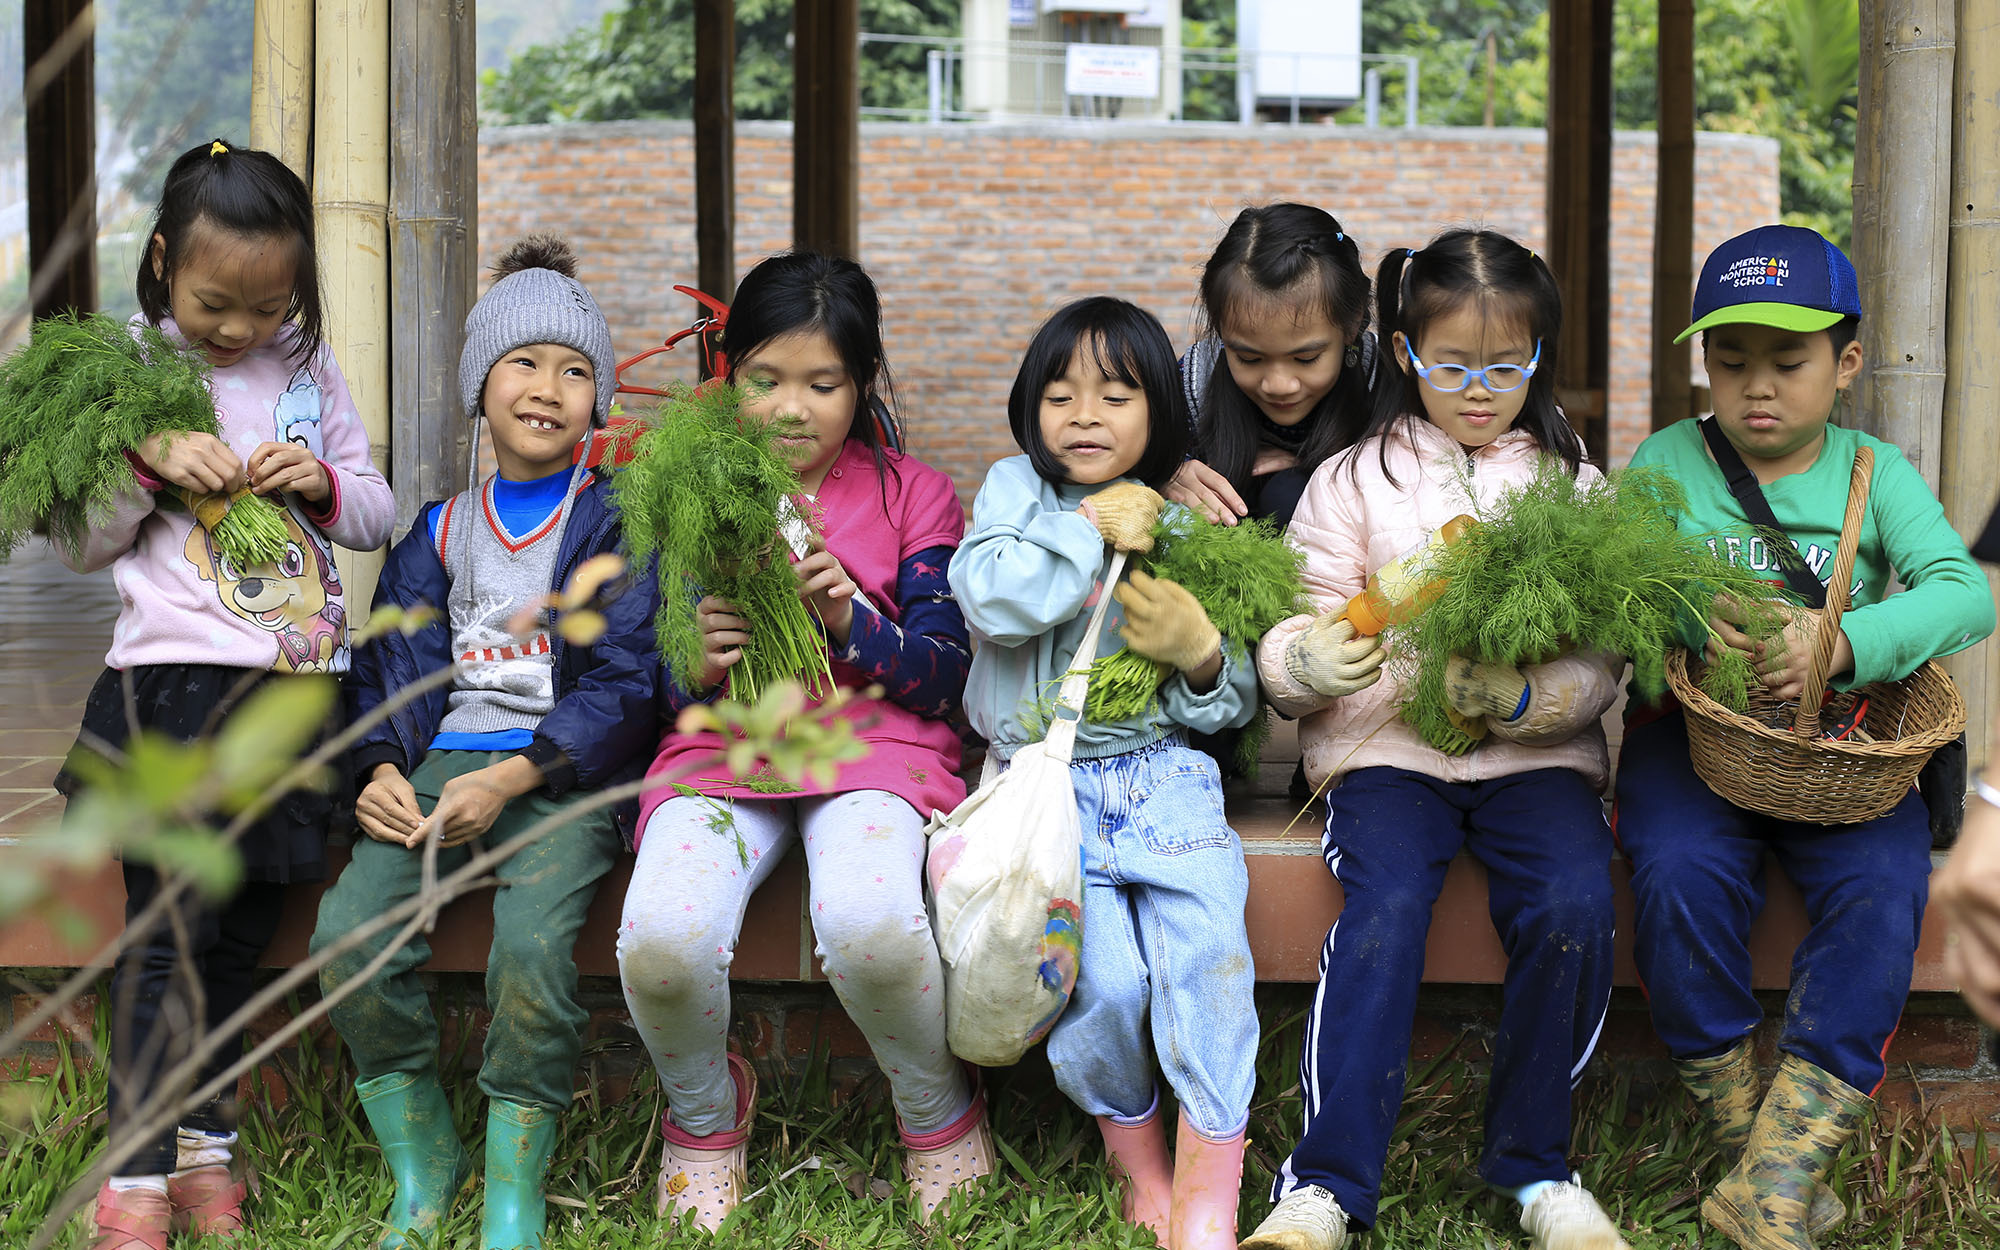 Đầu năm đến thăm trường Maya - ngôi trường xanh mướt với câu chuyện về những đứa trẻ lấm lem hạnh phúc